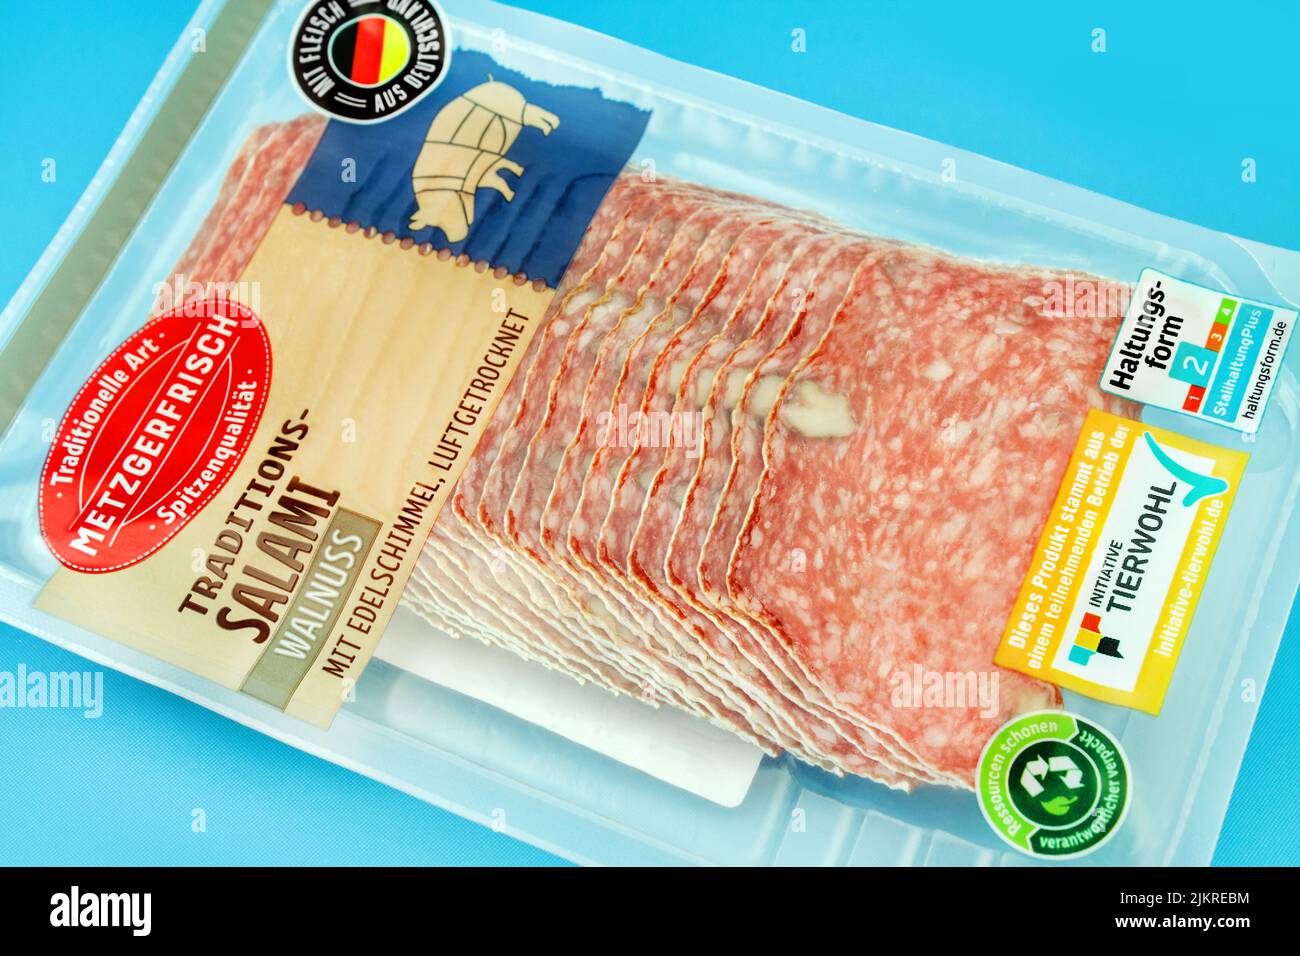 Walnuss Salami aus Deutschland von Metzgerfrisch mit Tierwohl Label Stock Photo